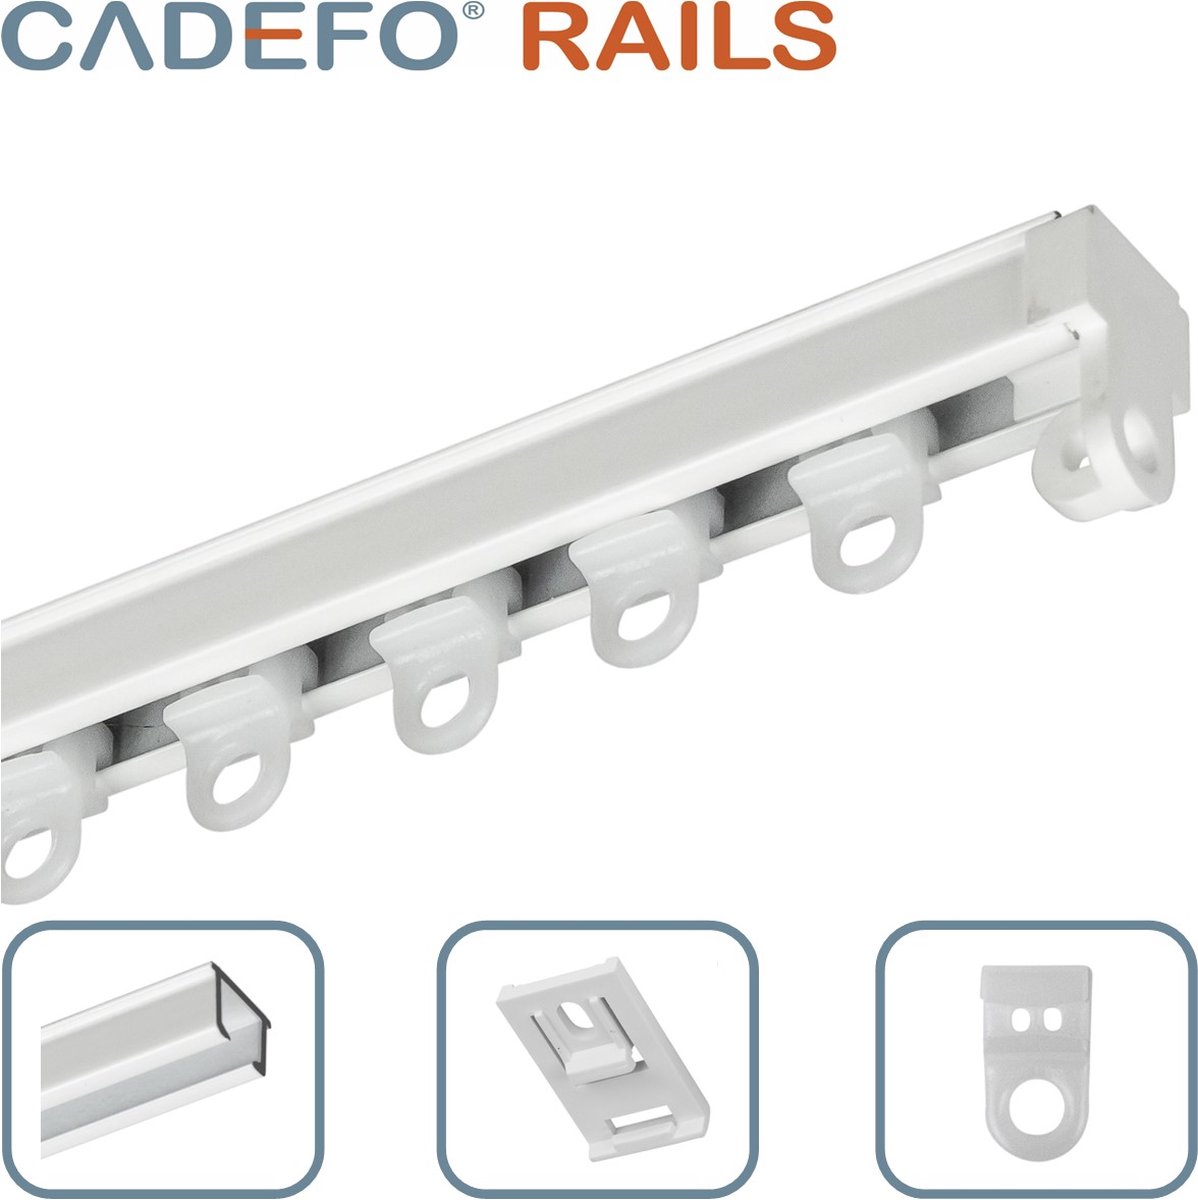 CADEFO RAILS (351 - 400 cm) Gordijnrails - Compleet op maat! - UIT 1 STUK - Leverbaar tot 6 meter - Plafondbevestiging - Lengte 363 cm